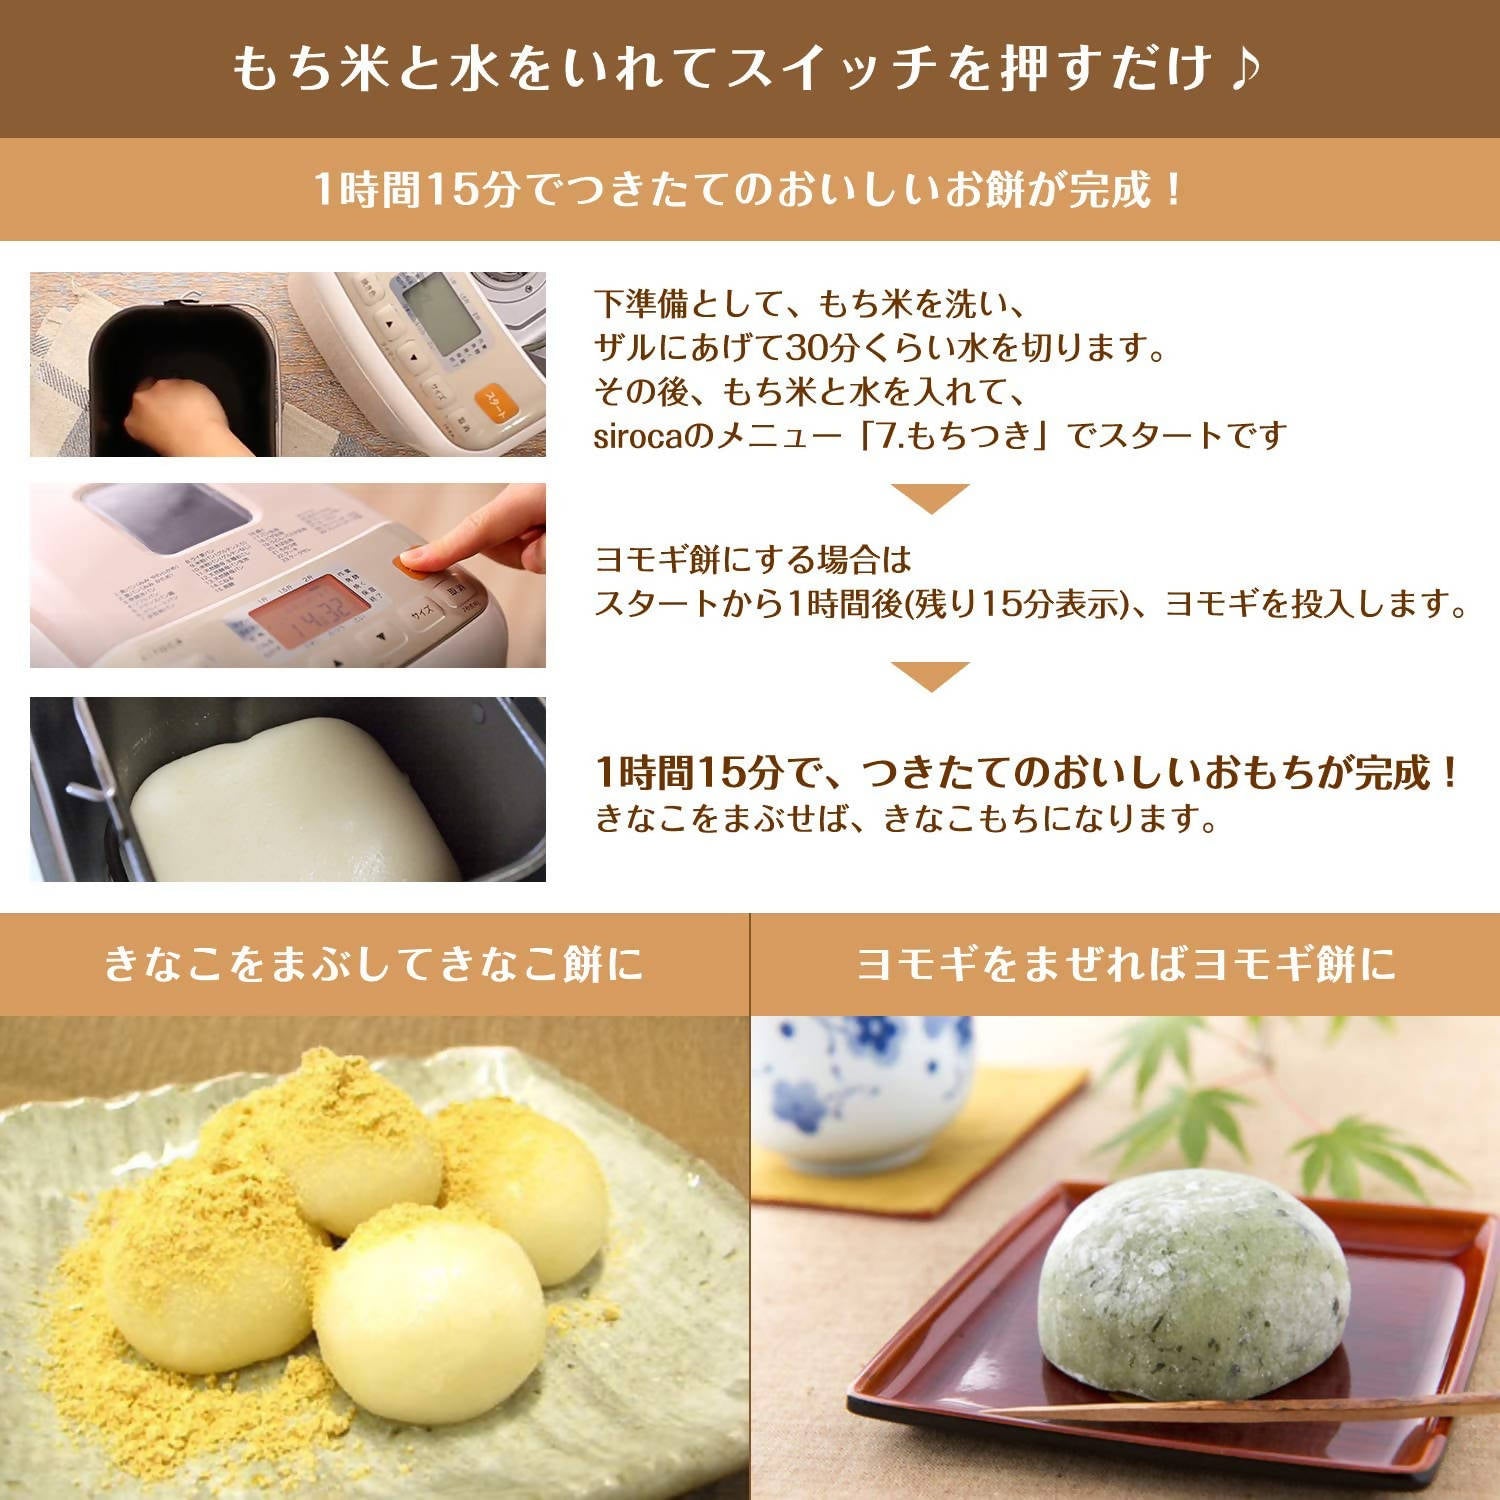 Siroca SHB-122 Home Bread Maker – Allegro Japan